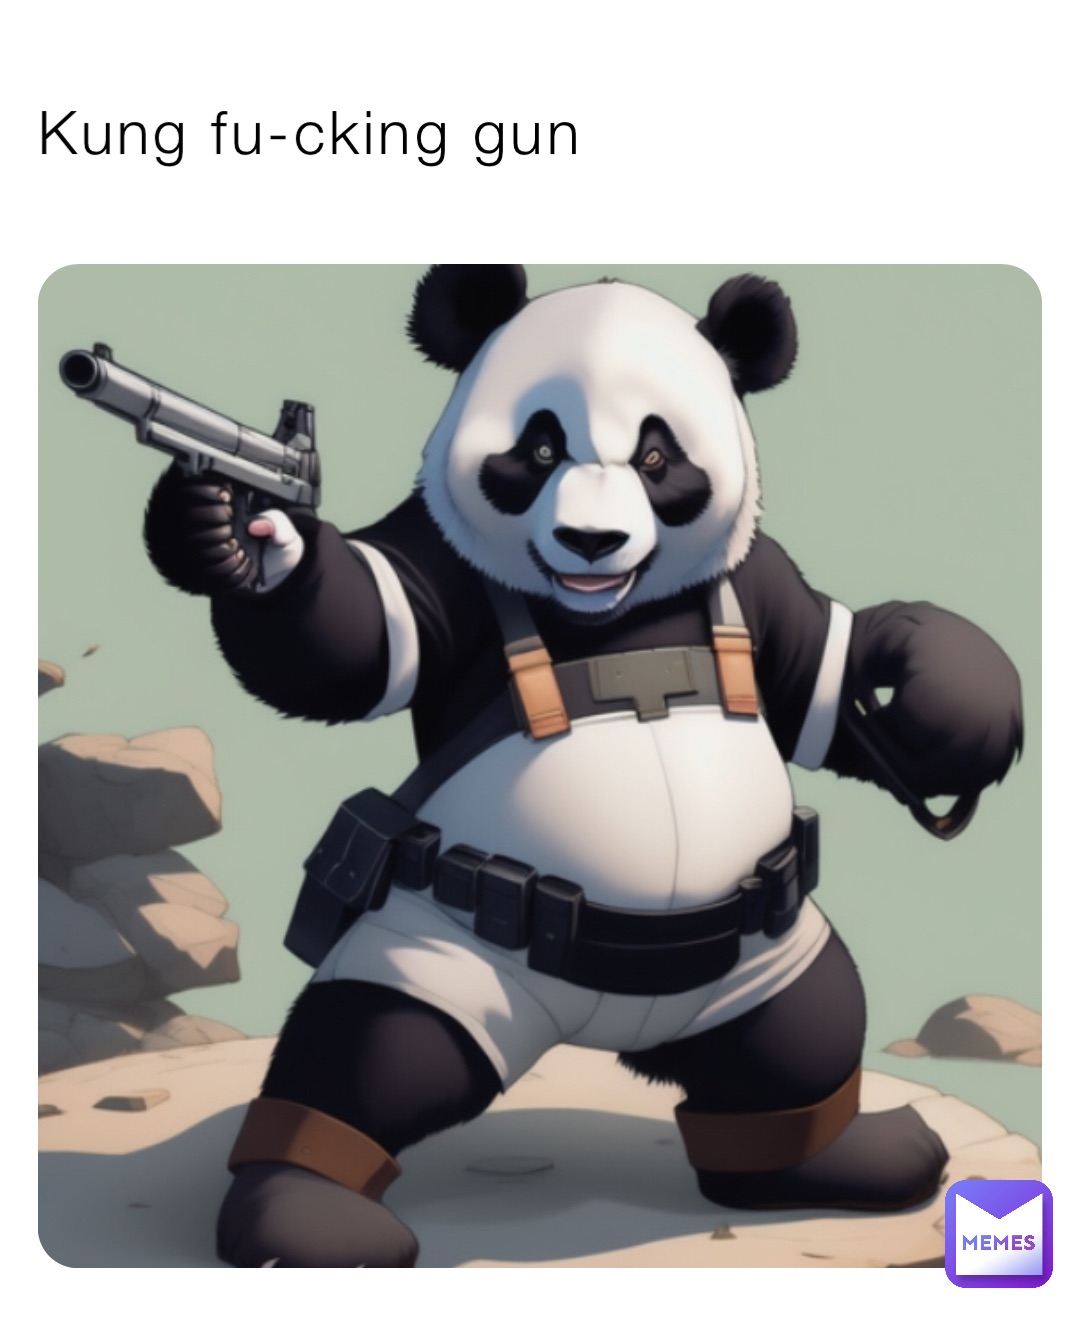 Kung fu-cking gun